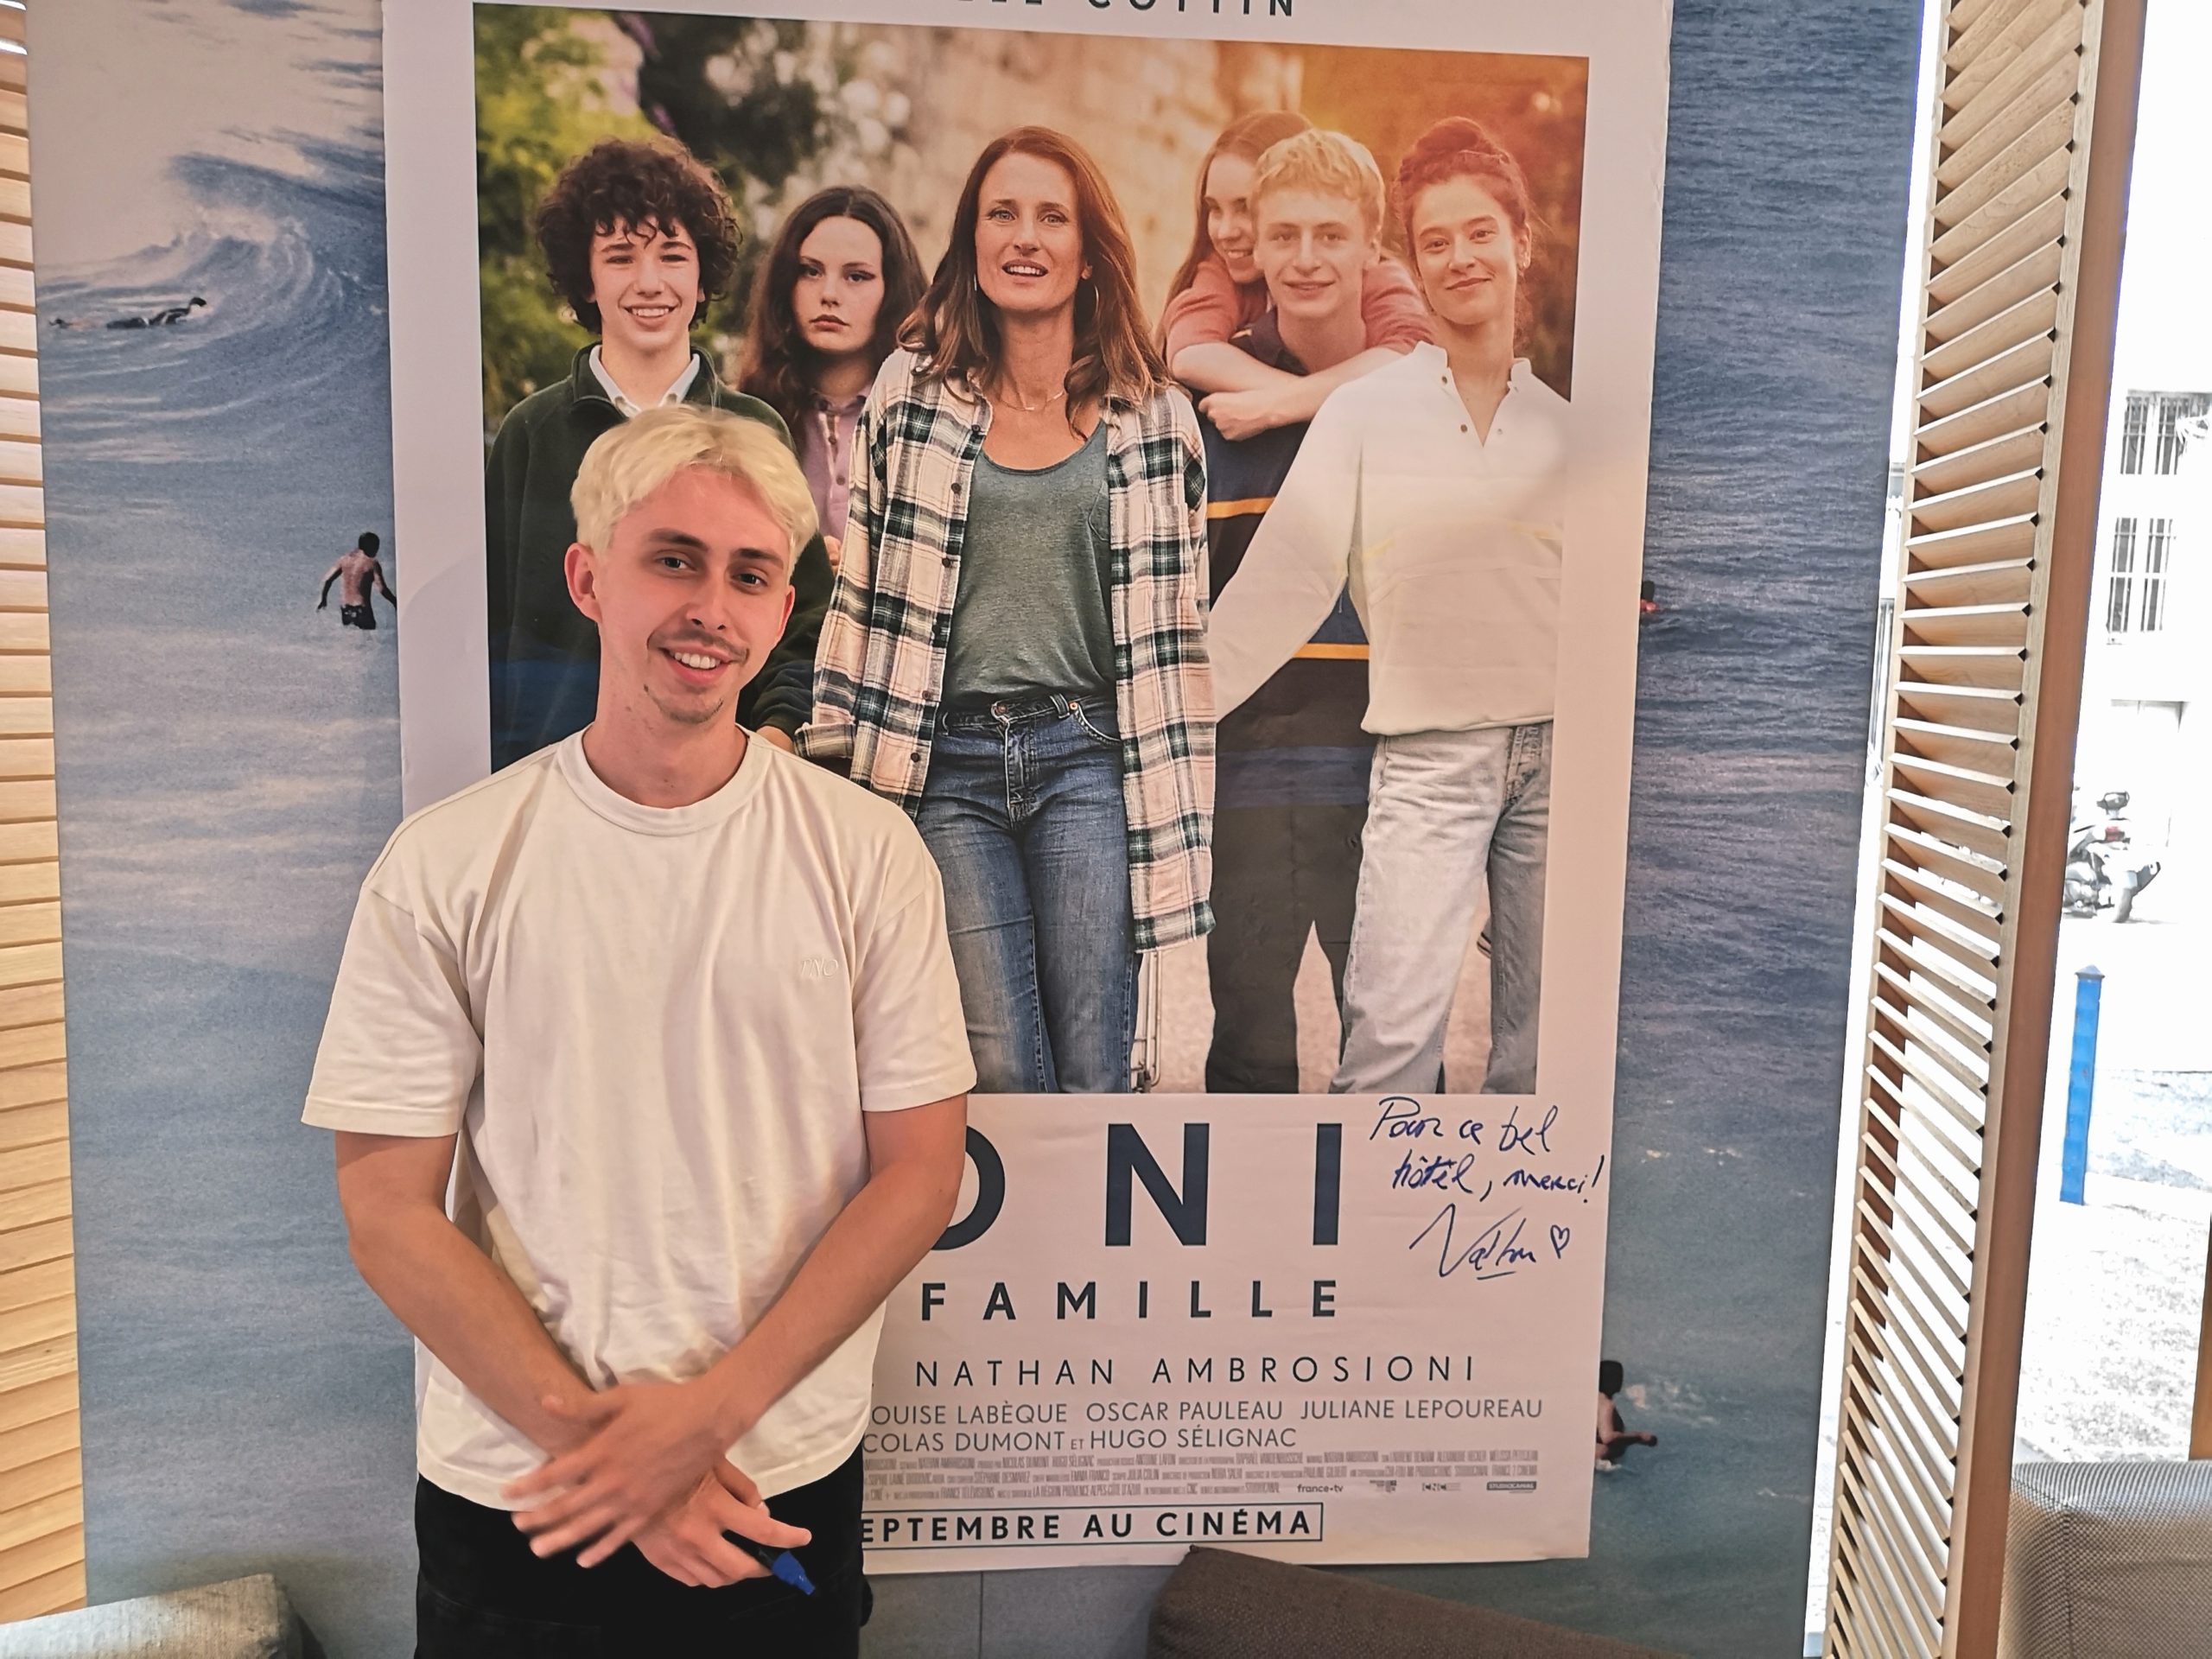 TONI EN FAMILLE de Nathan Ambrosioni : la critique du film